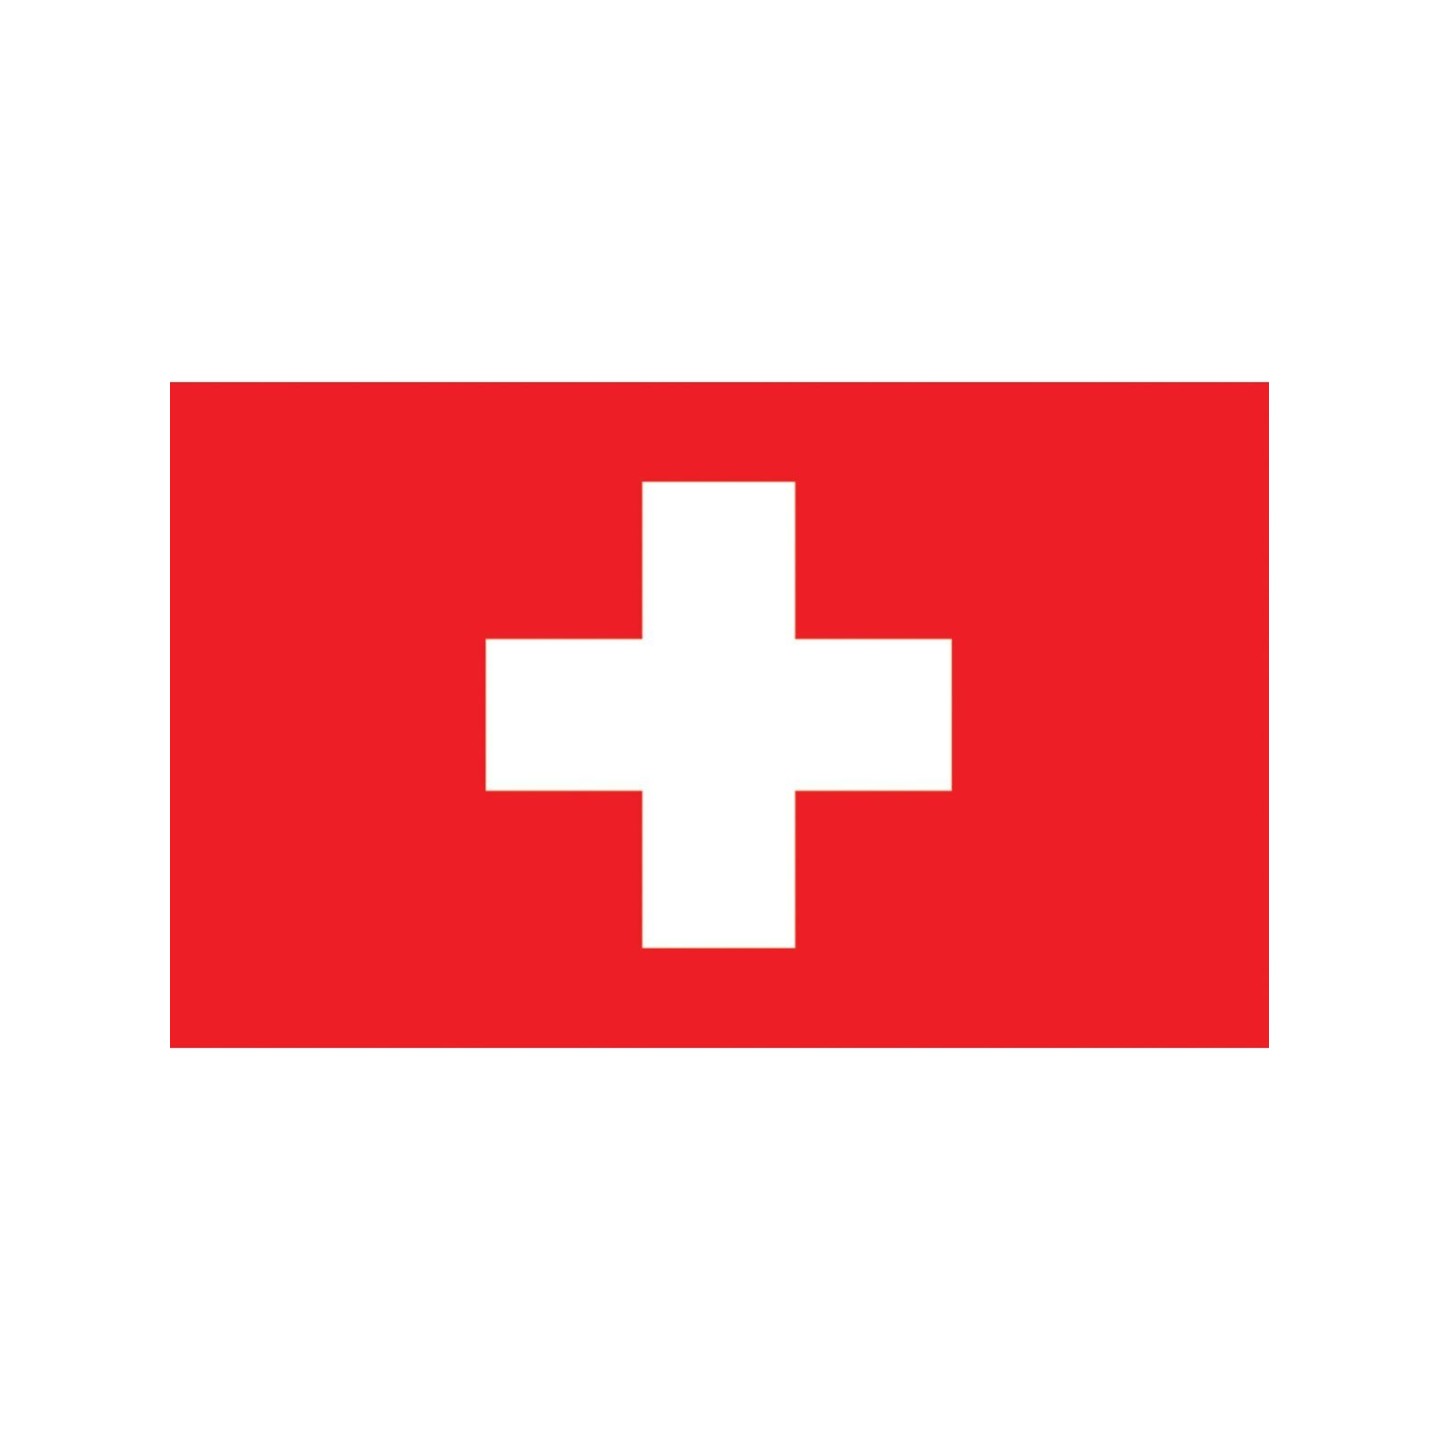 zwitserse vlag zwitserland